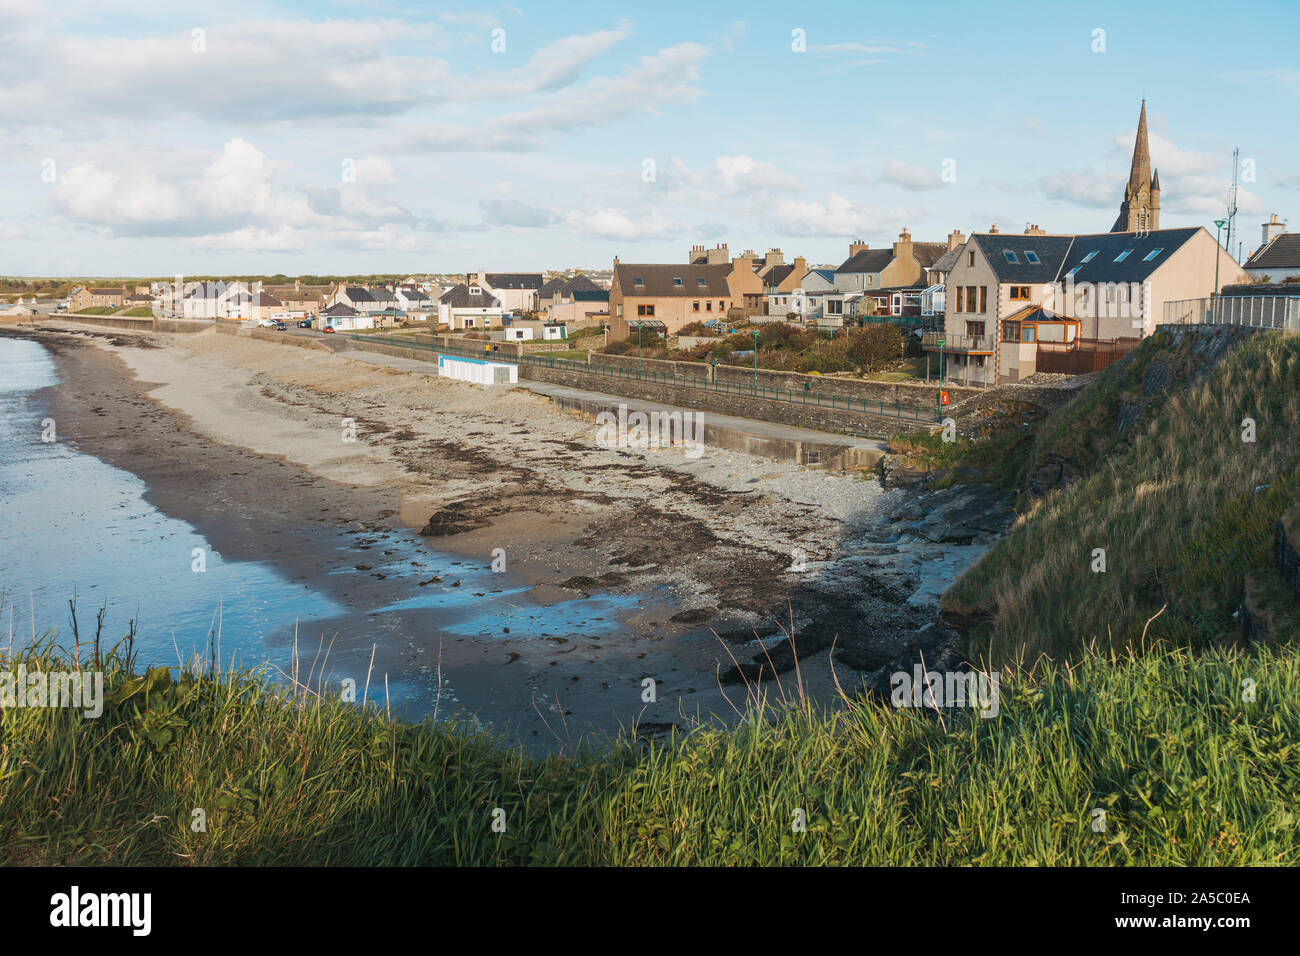 Einen schönen Blick über die friedliche Thurso Gemeinde, von der Küste gesehen. Thurso ist die nördlichste Stadt in Großbritannien. Stockfoto